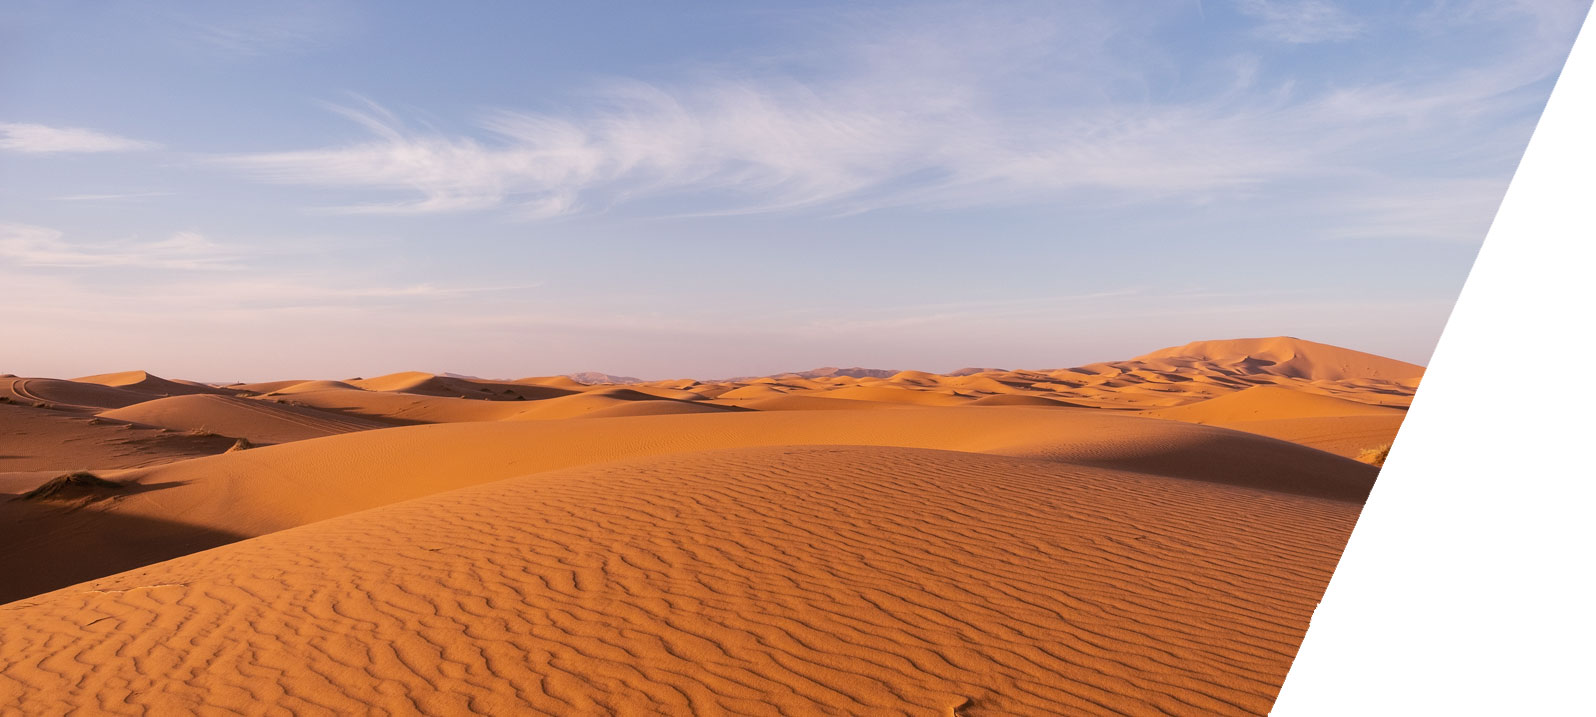 A desert in Morocco (xlinks.co)